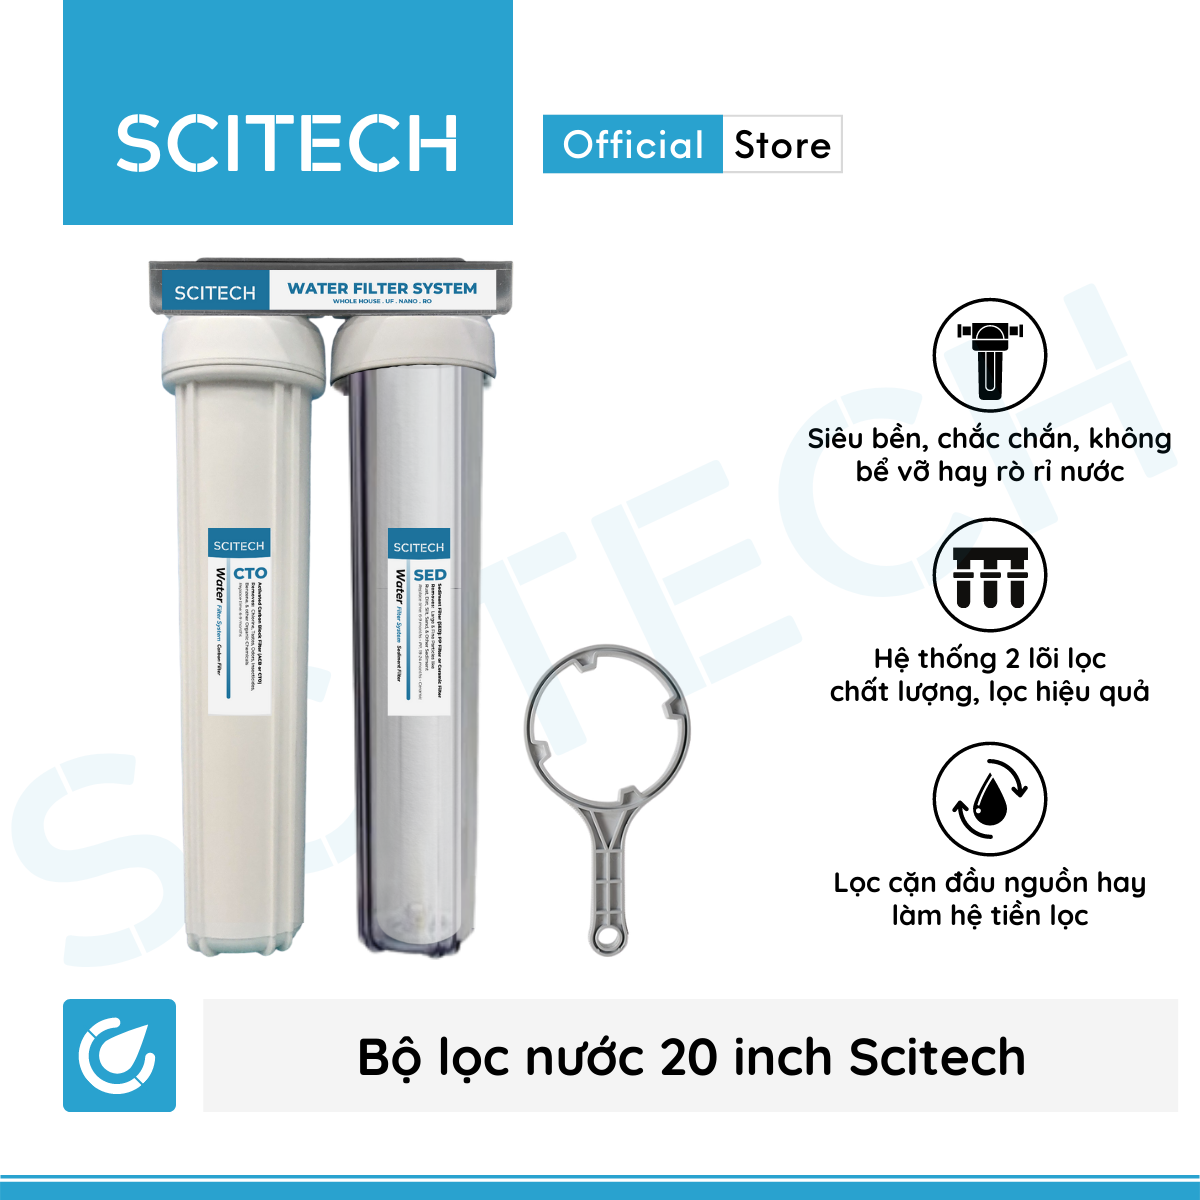 Bộ lọc nước sinh hoạt, bộ đôi lọc thô 20 inch Scitech (2 cấp lọc) - Hàng chính hãng